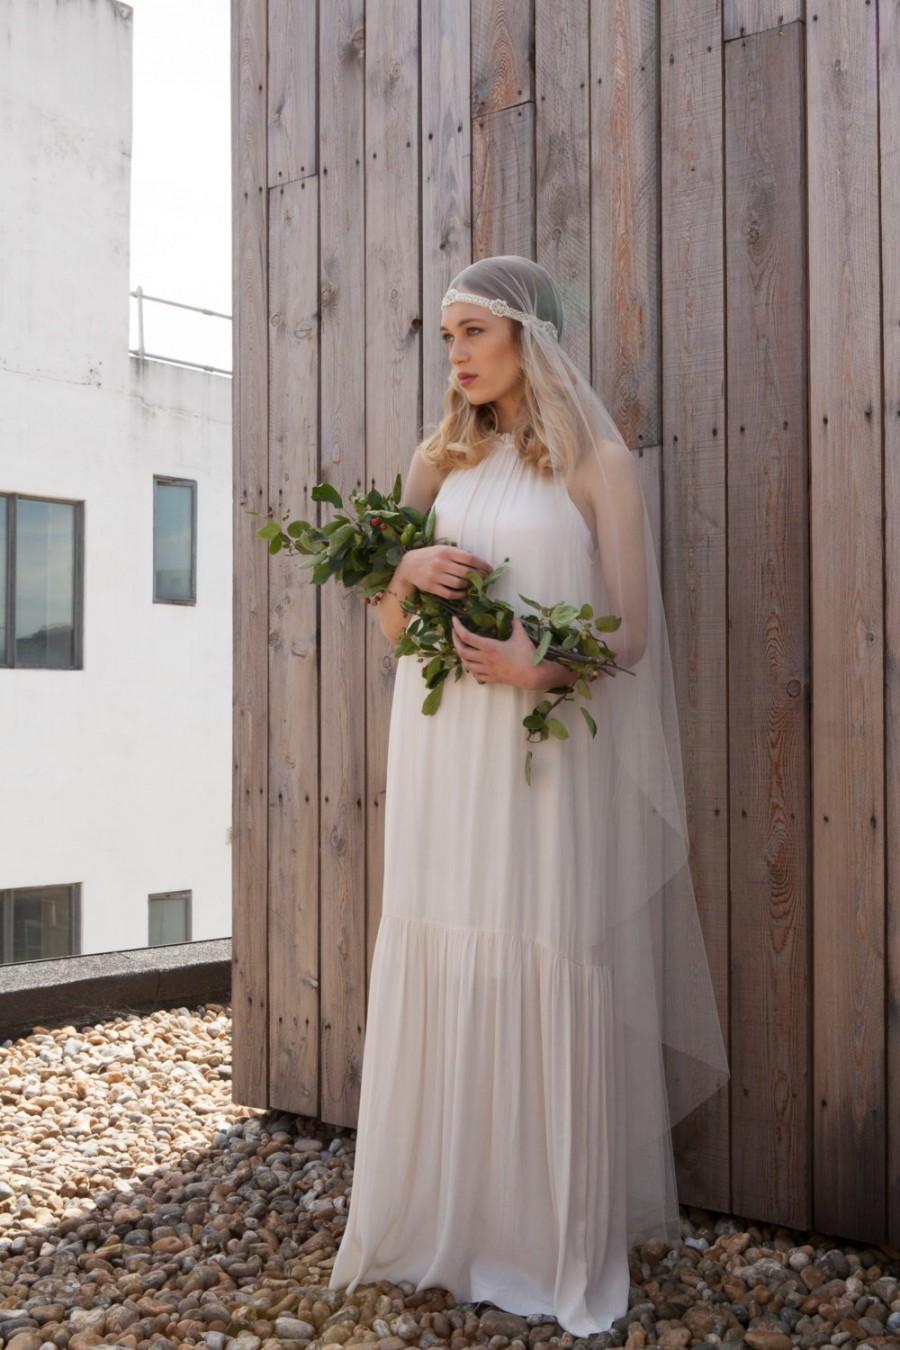 Wedding - Bohemian Juliet Cap Wedding veil - Juliette Cap veil with beaded detailing - fingertip length - waltz length -chapel length veil